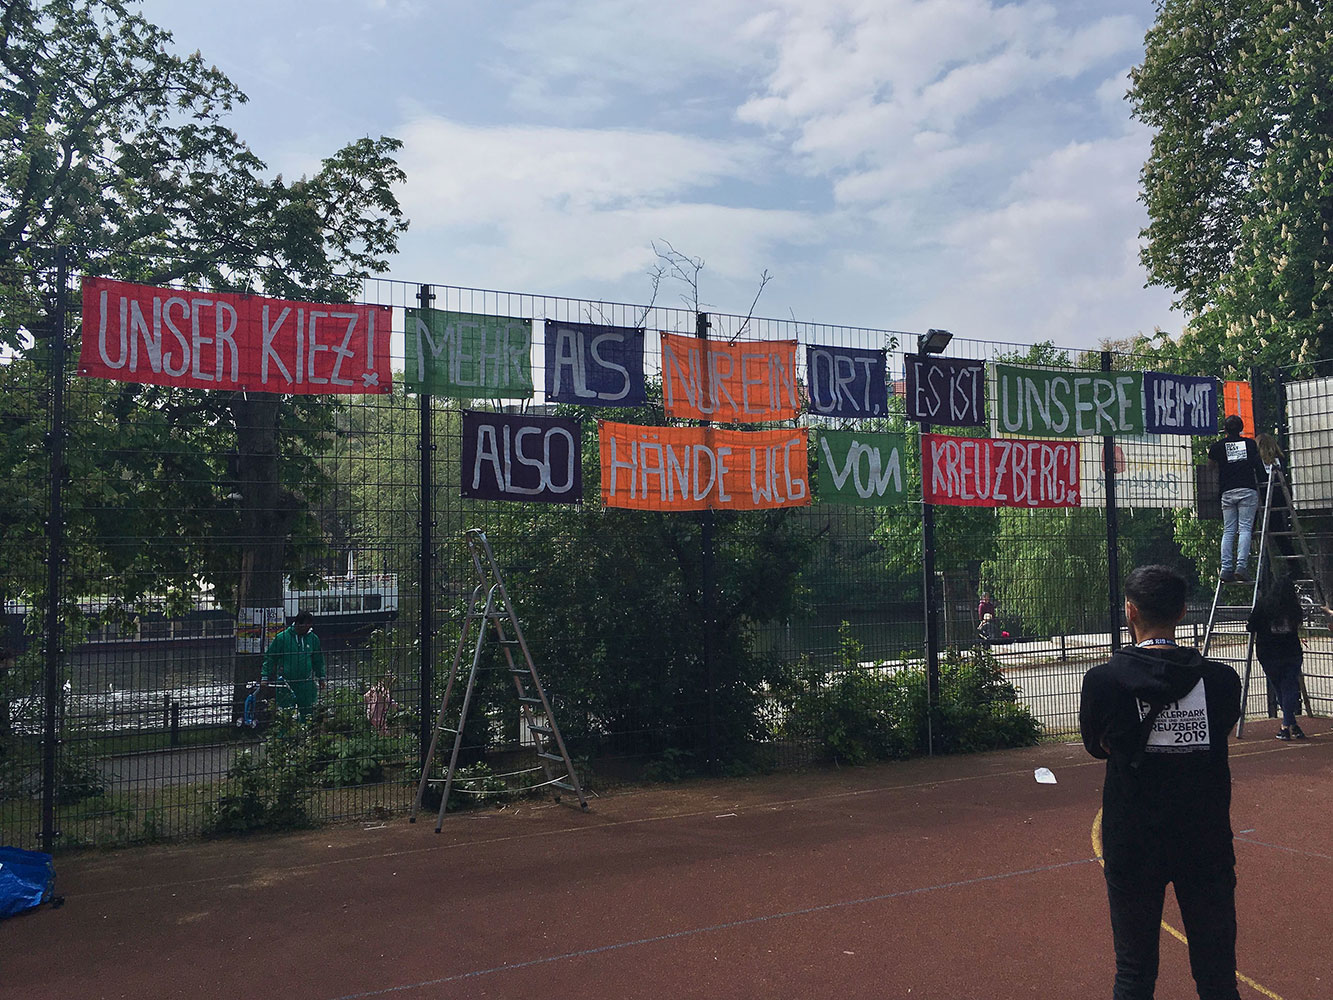 Abb. 4 Jugendliche befestigen für das MaiFest (2019) ein selbstgemaltes Banner am Zaun eines Kreuzberger Kinder- und Jugendzentrums (Quelle: eigene Aufnahme)